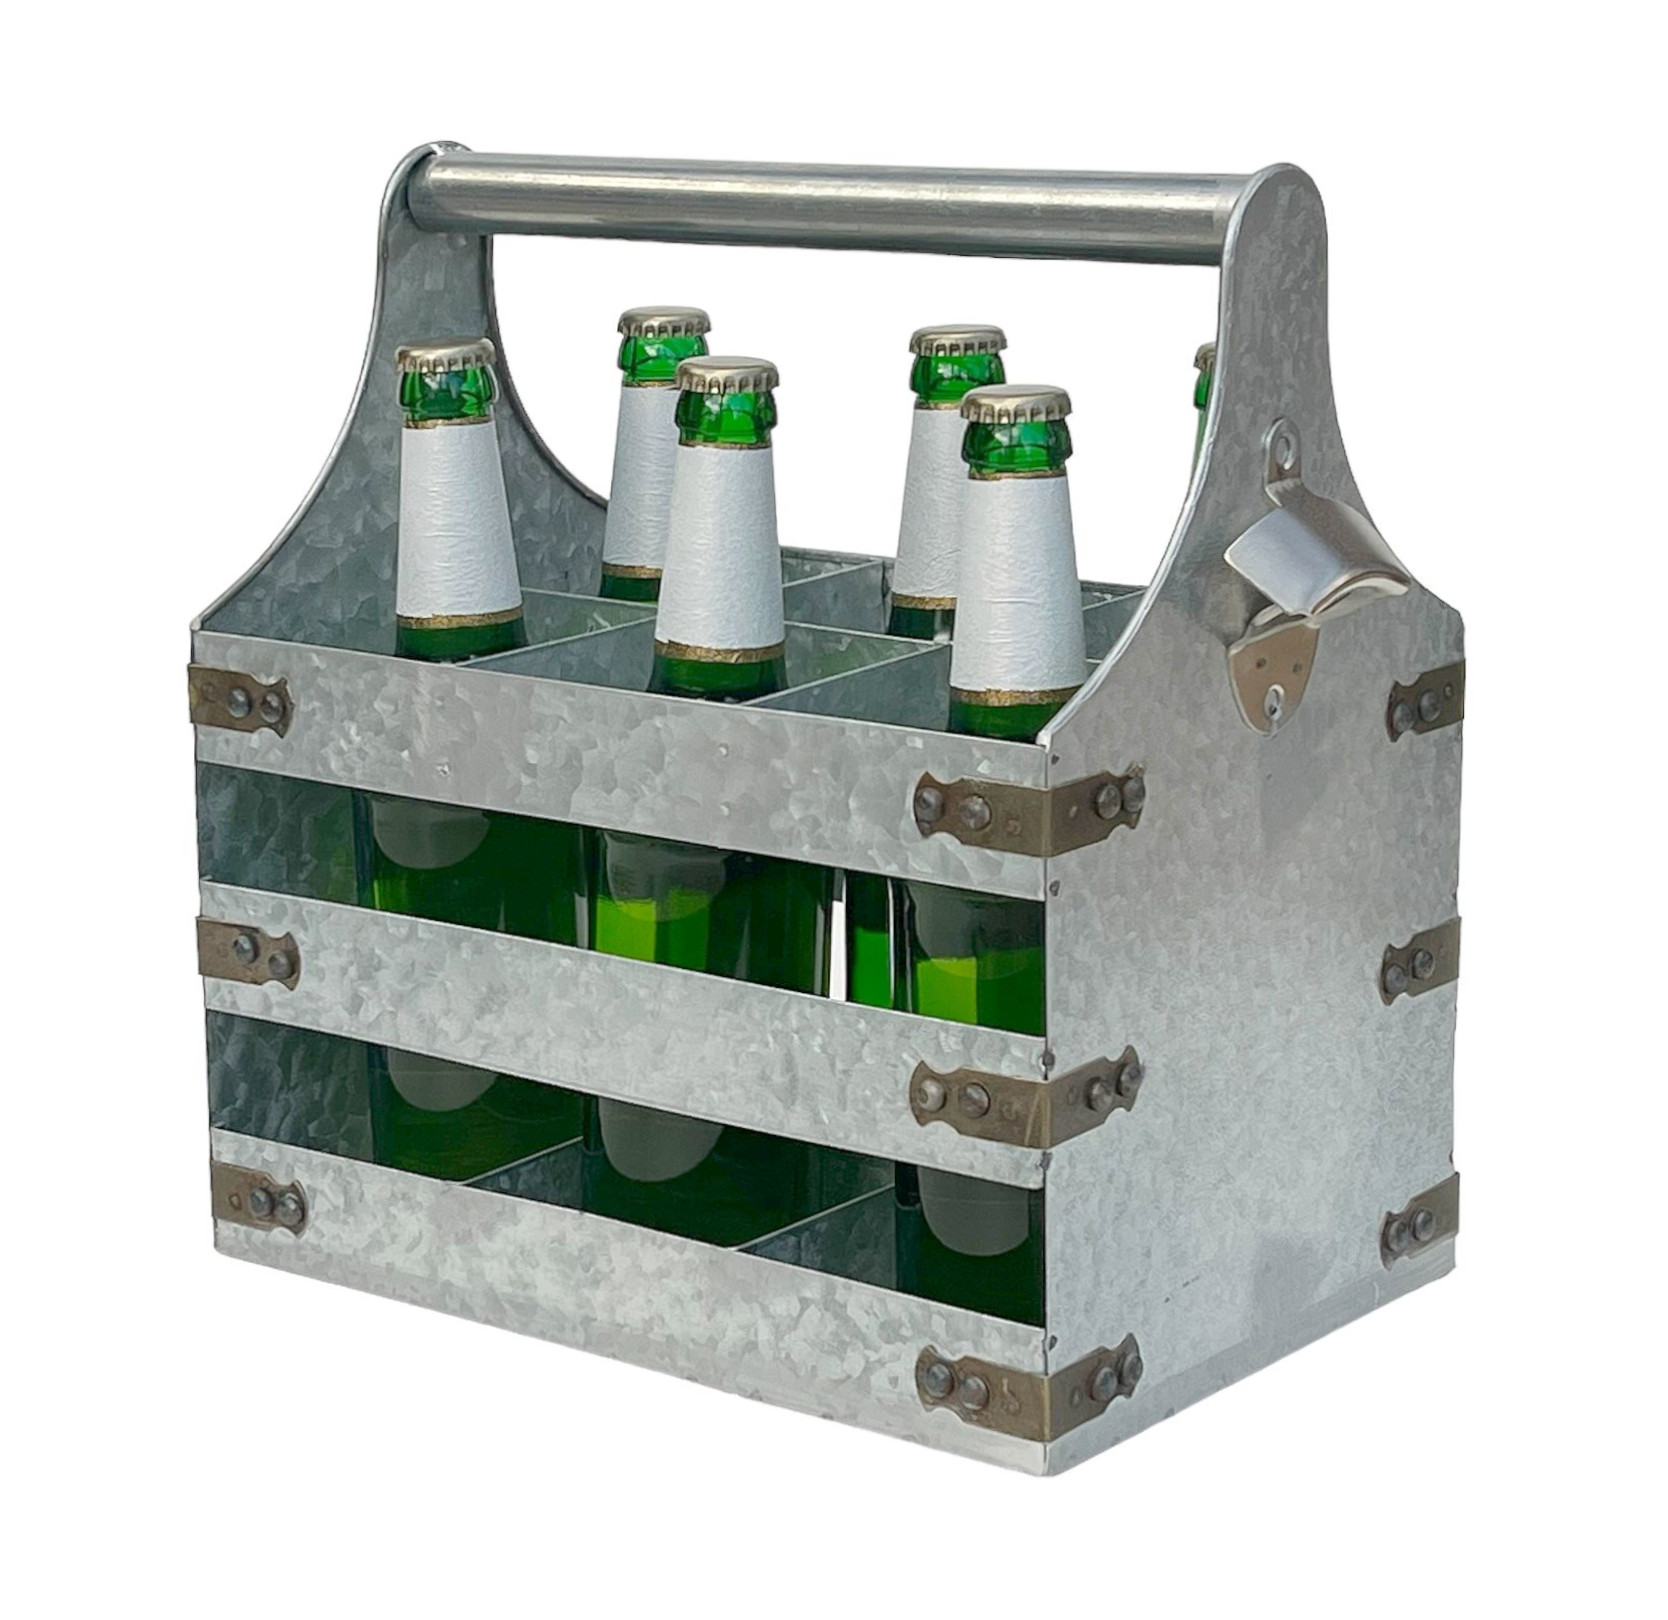 DanDiBo Bierträger Metall mit Öffner 96403 Flaschenträger 6 Flaschen  Flaschenöffner Flaschenkorb Männerhandtasche Männergeschenke -  DanDiBo-Ambiente